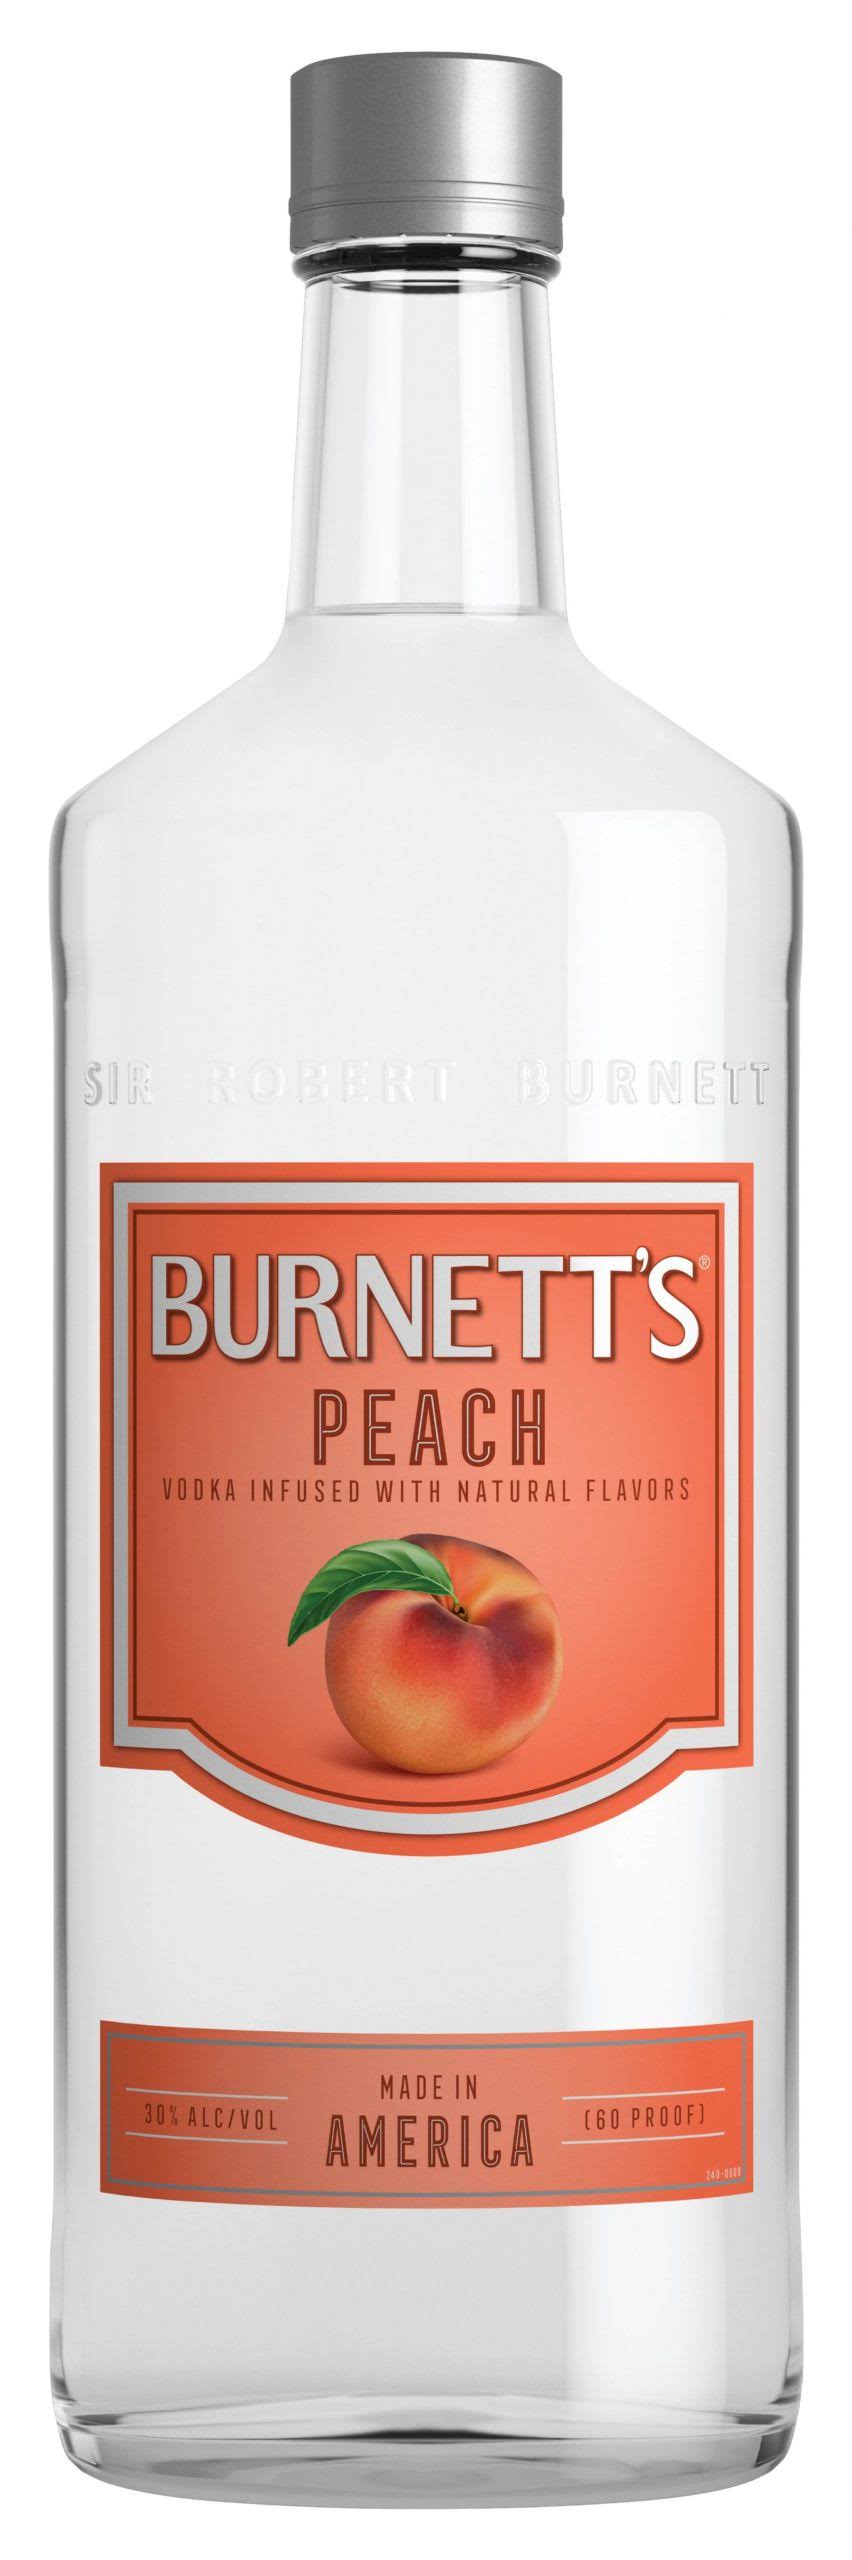 Burnett's Peach Vodka - 1.75 L